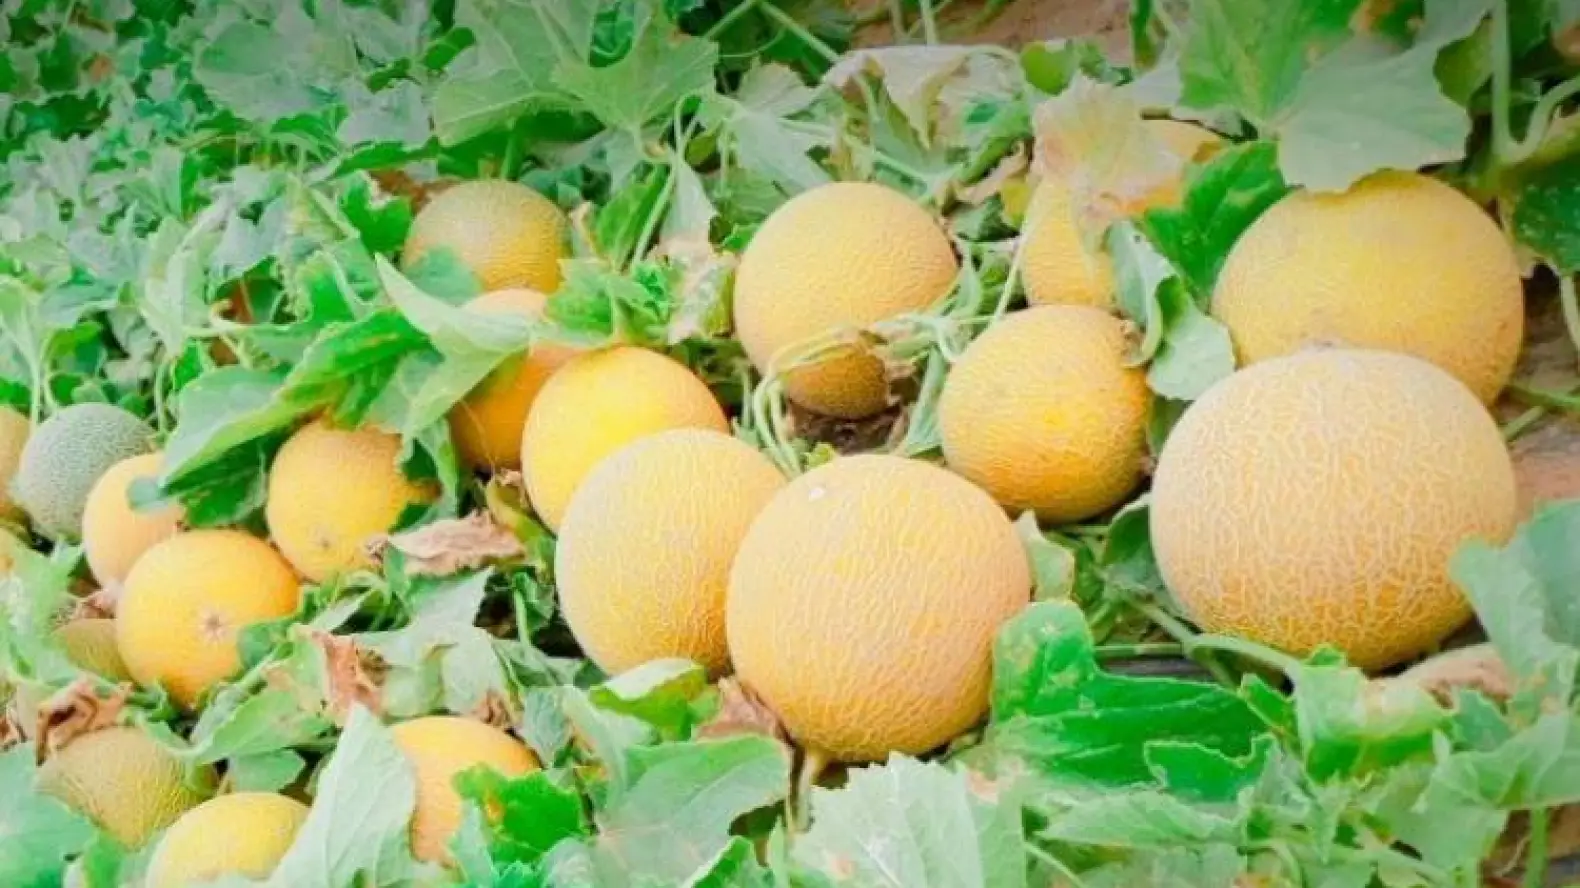 عامل إقليم كلميم يمنع زراعة البطيخ الأحمر والأصفر للحفاظ على الفرشة المائية